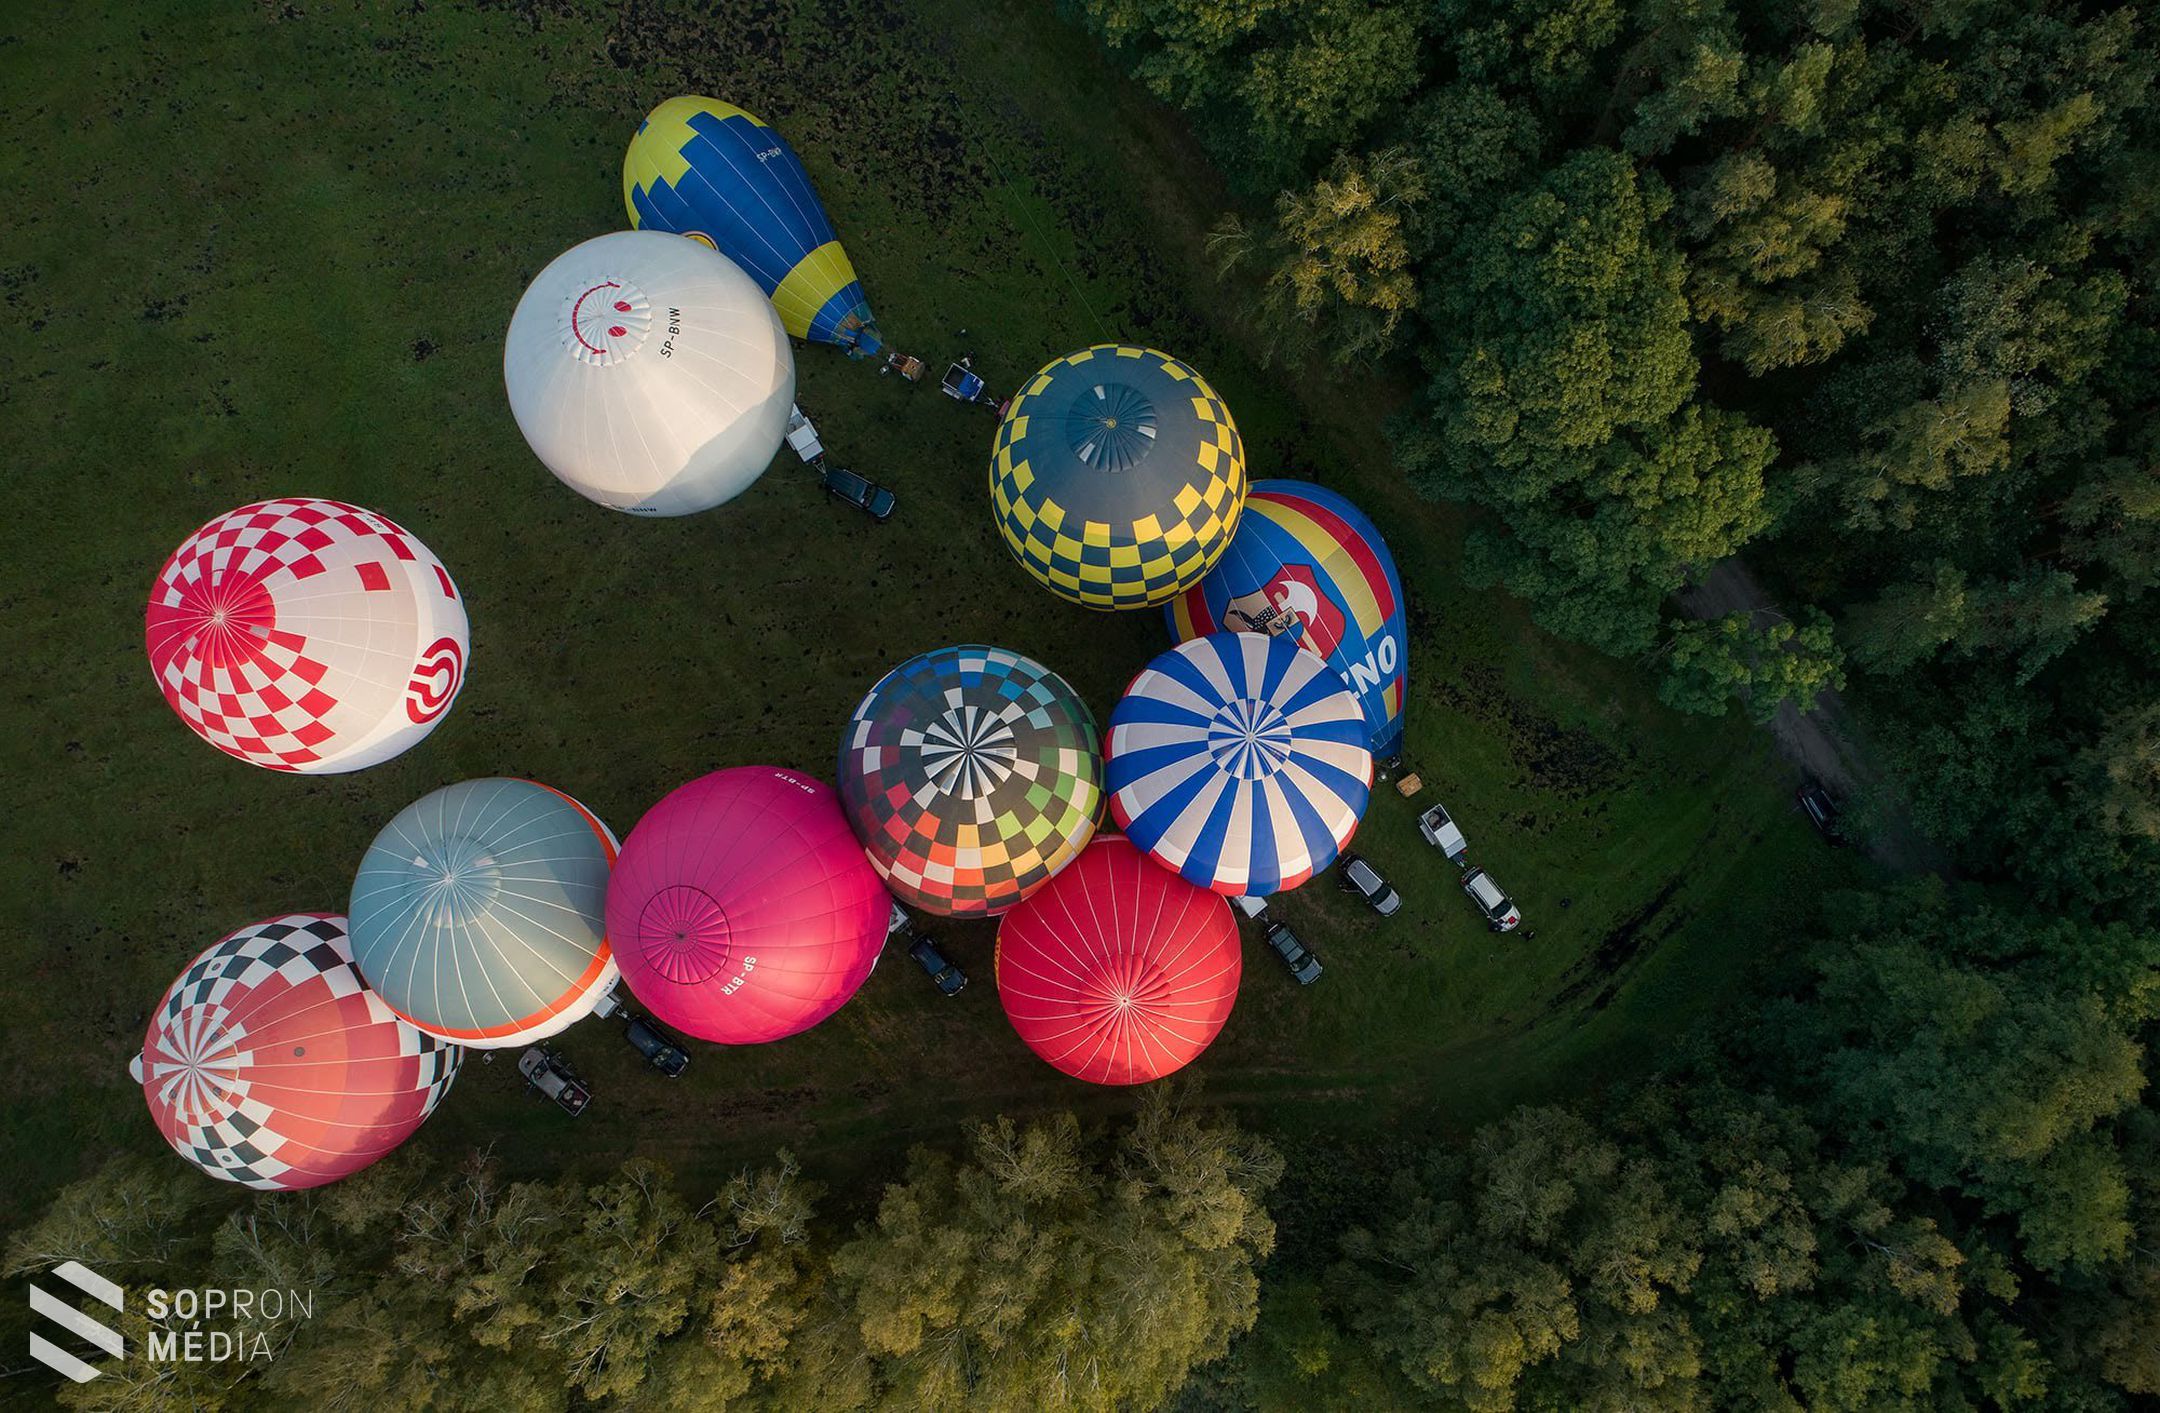 1000 méter magasan is szelik a hőlégballonok Sopron és környéke egét